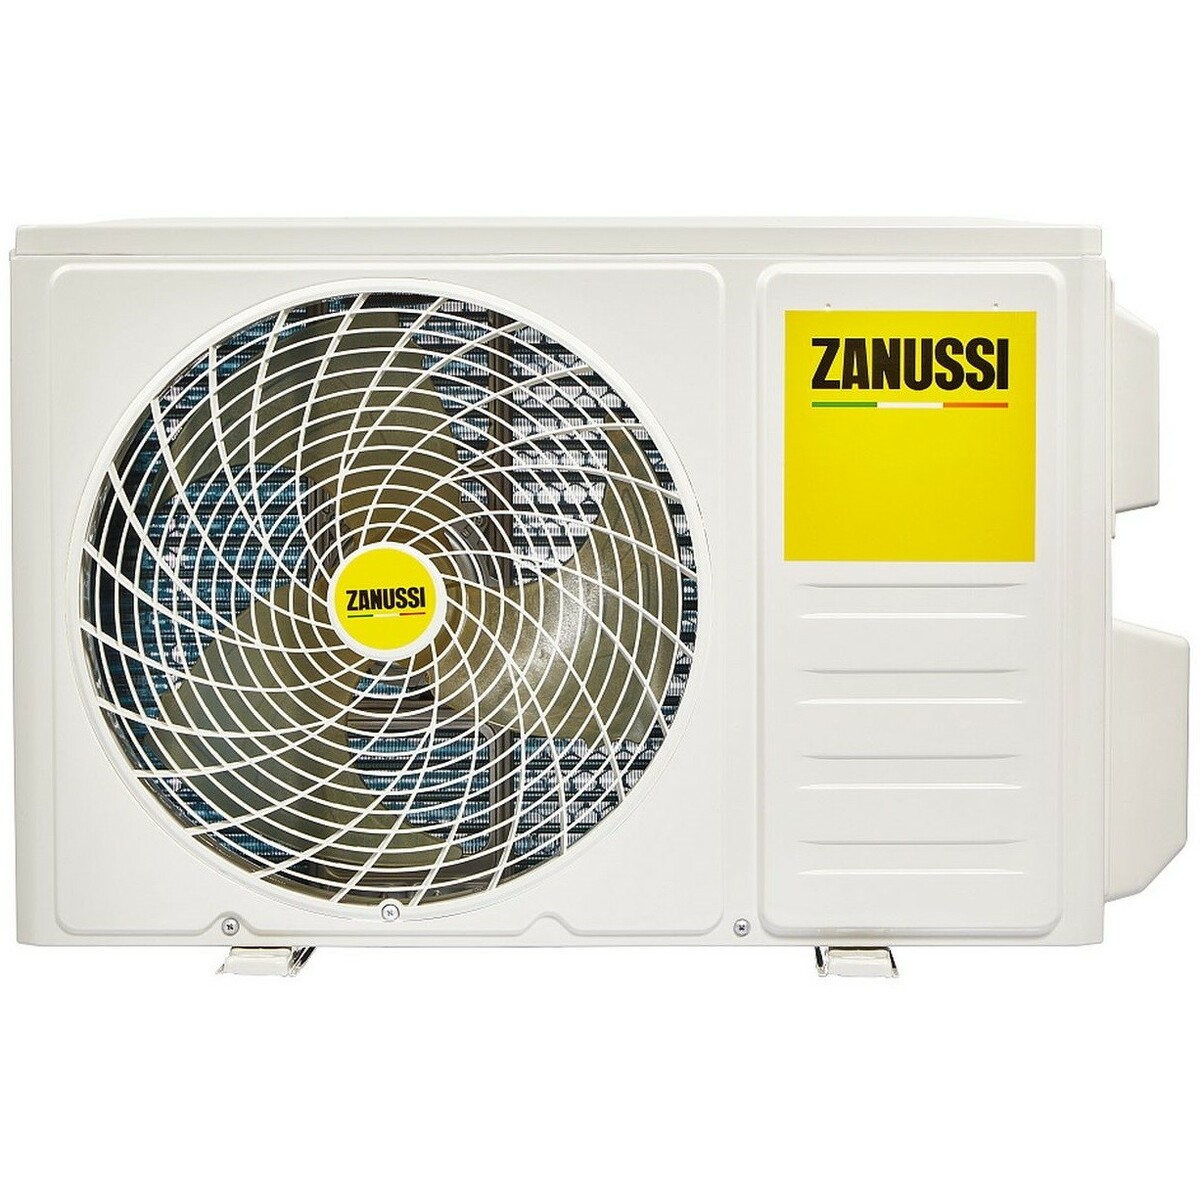 Сплит-система Zanussi ZACS-24 HB/A23/N1, белый